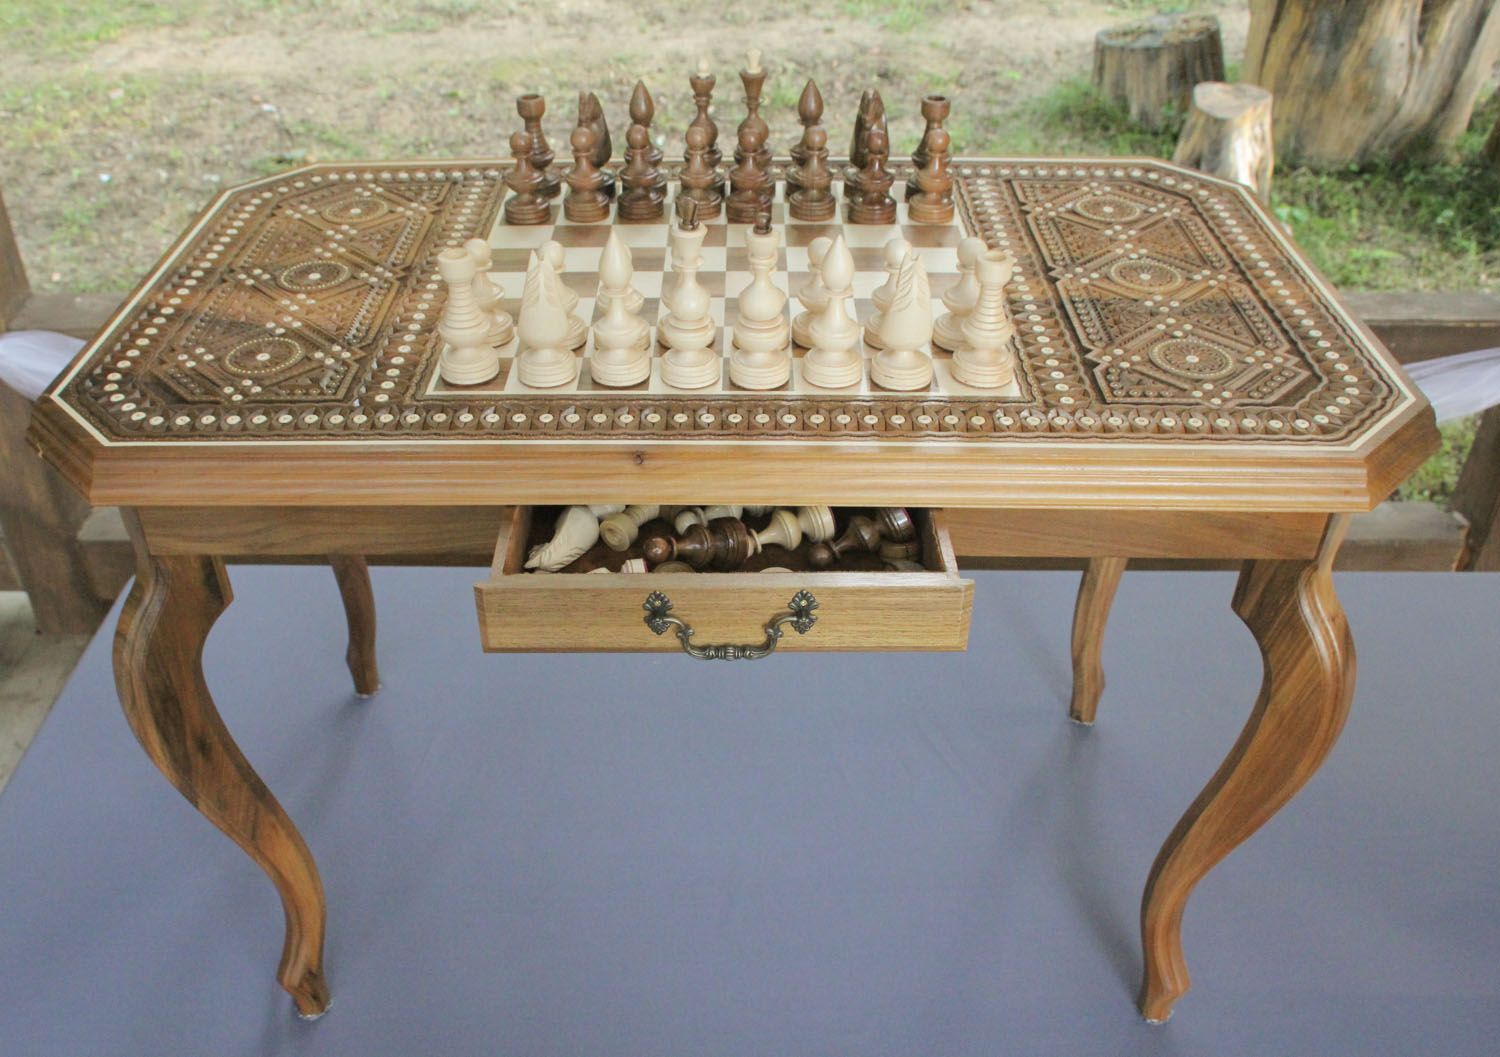 Geschnitzter Schach-Tisch foto 3